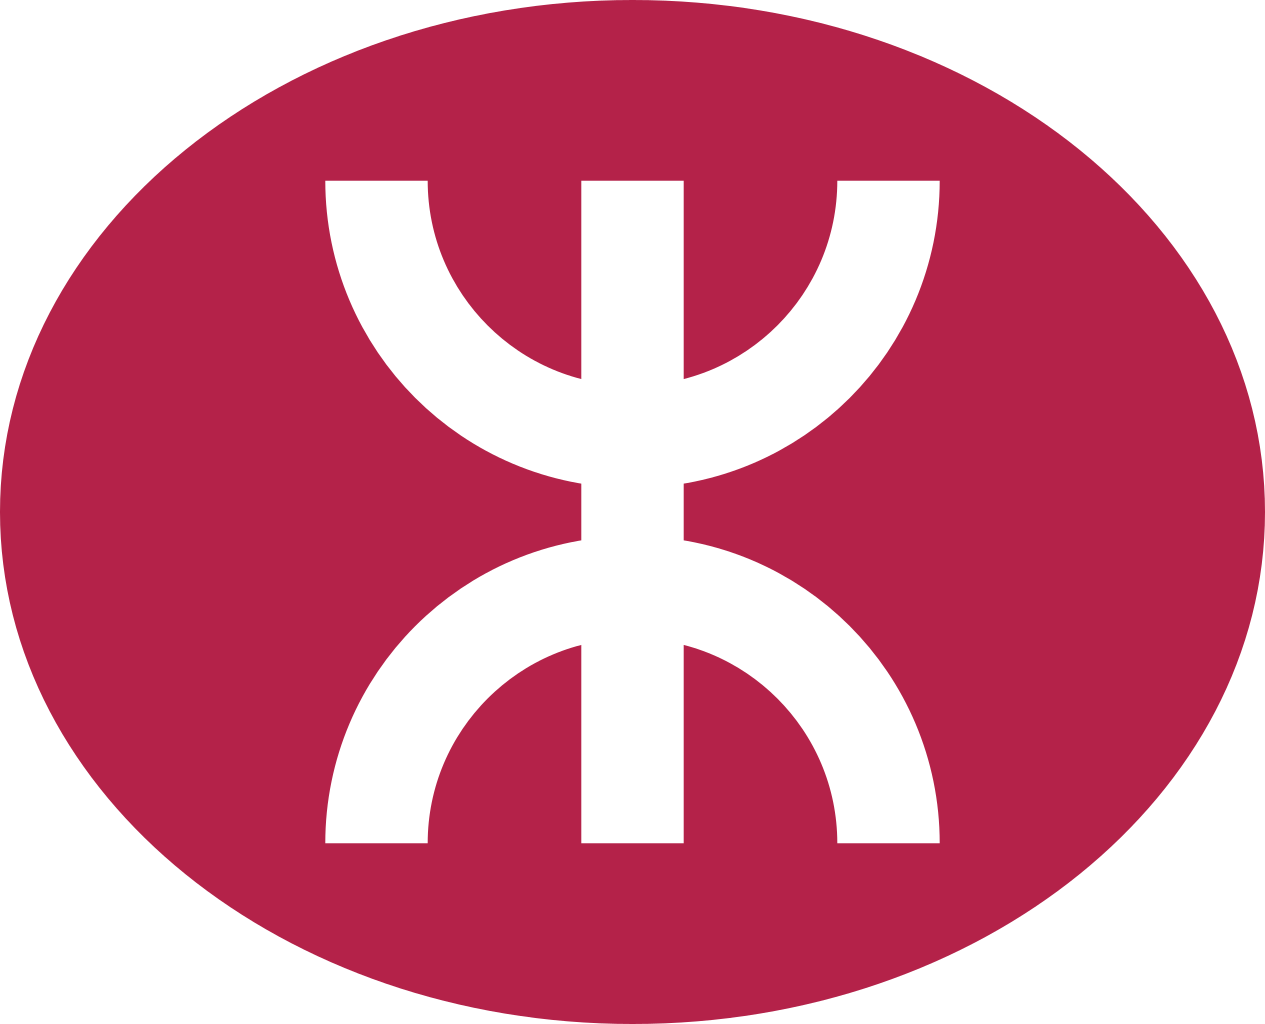 MTR Logo Wallpaper